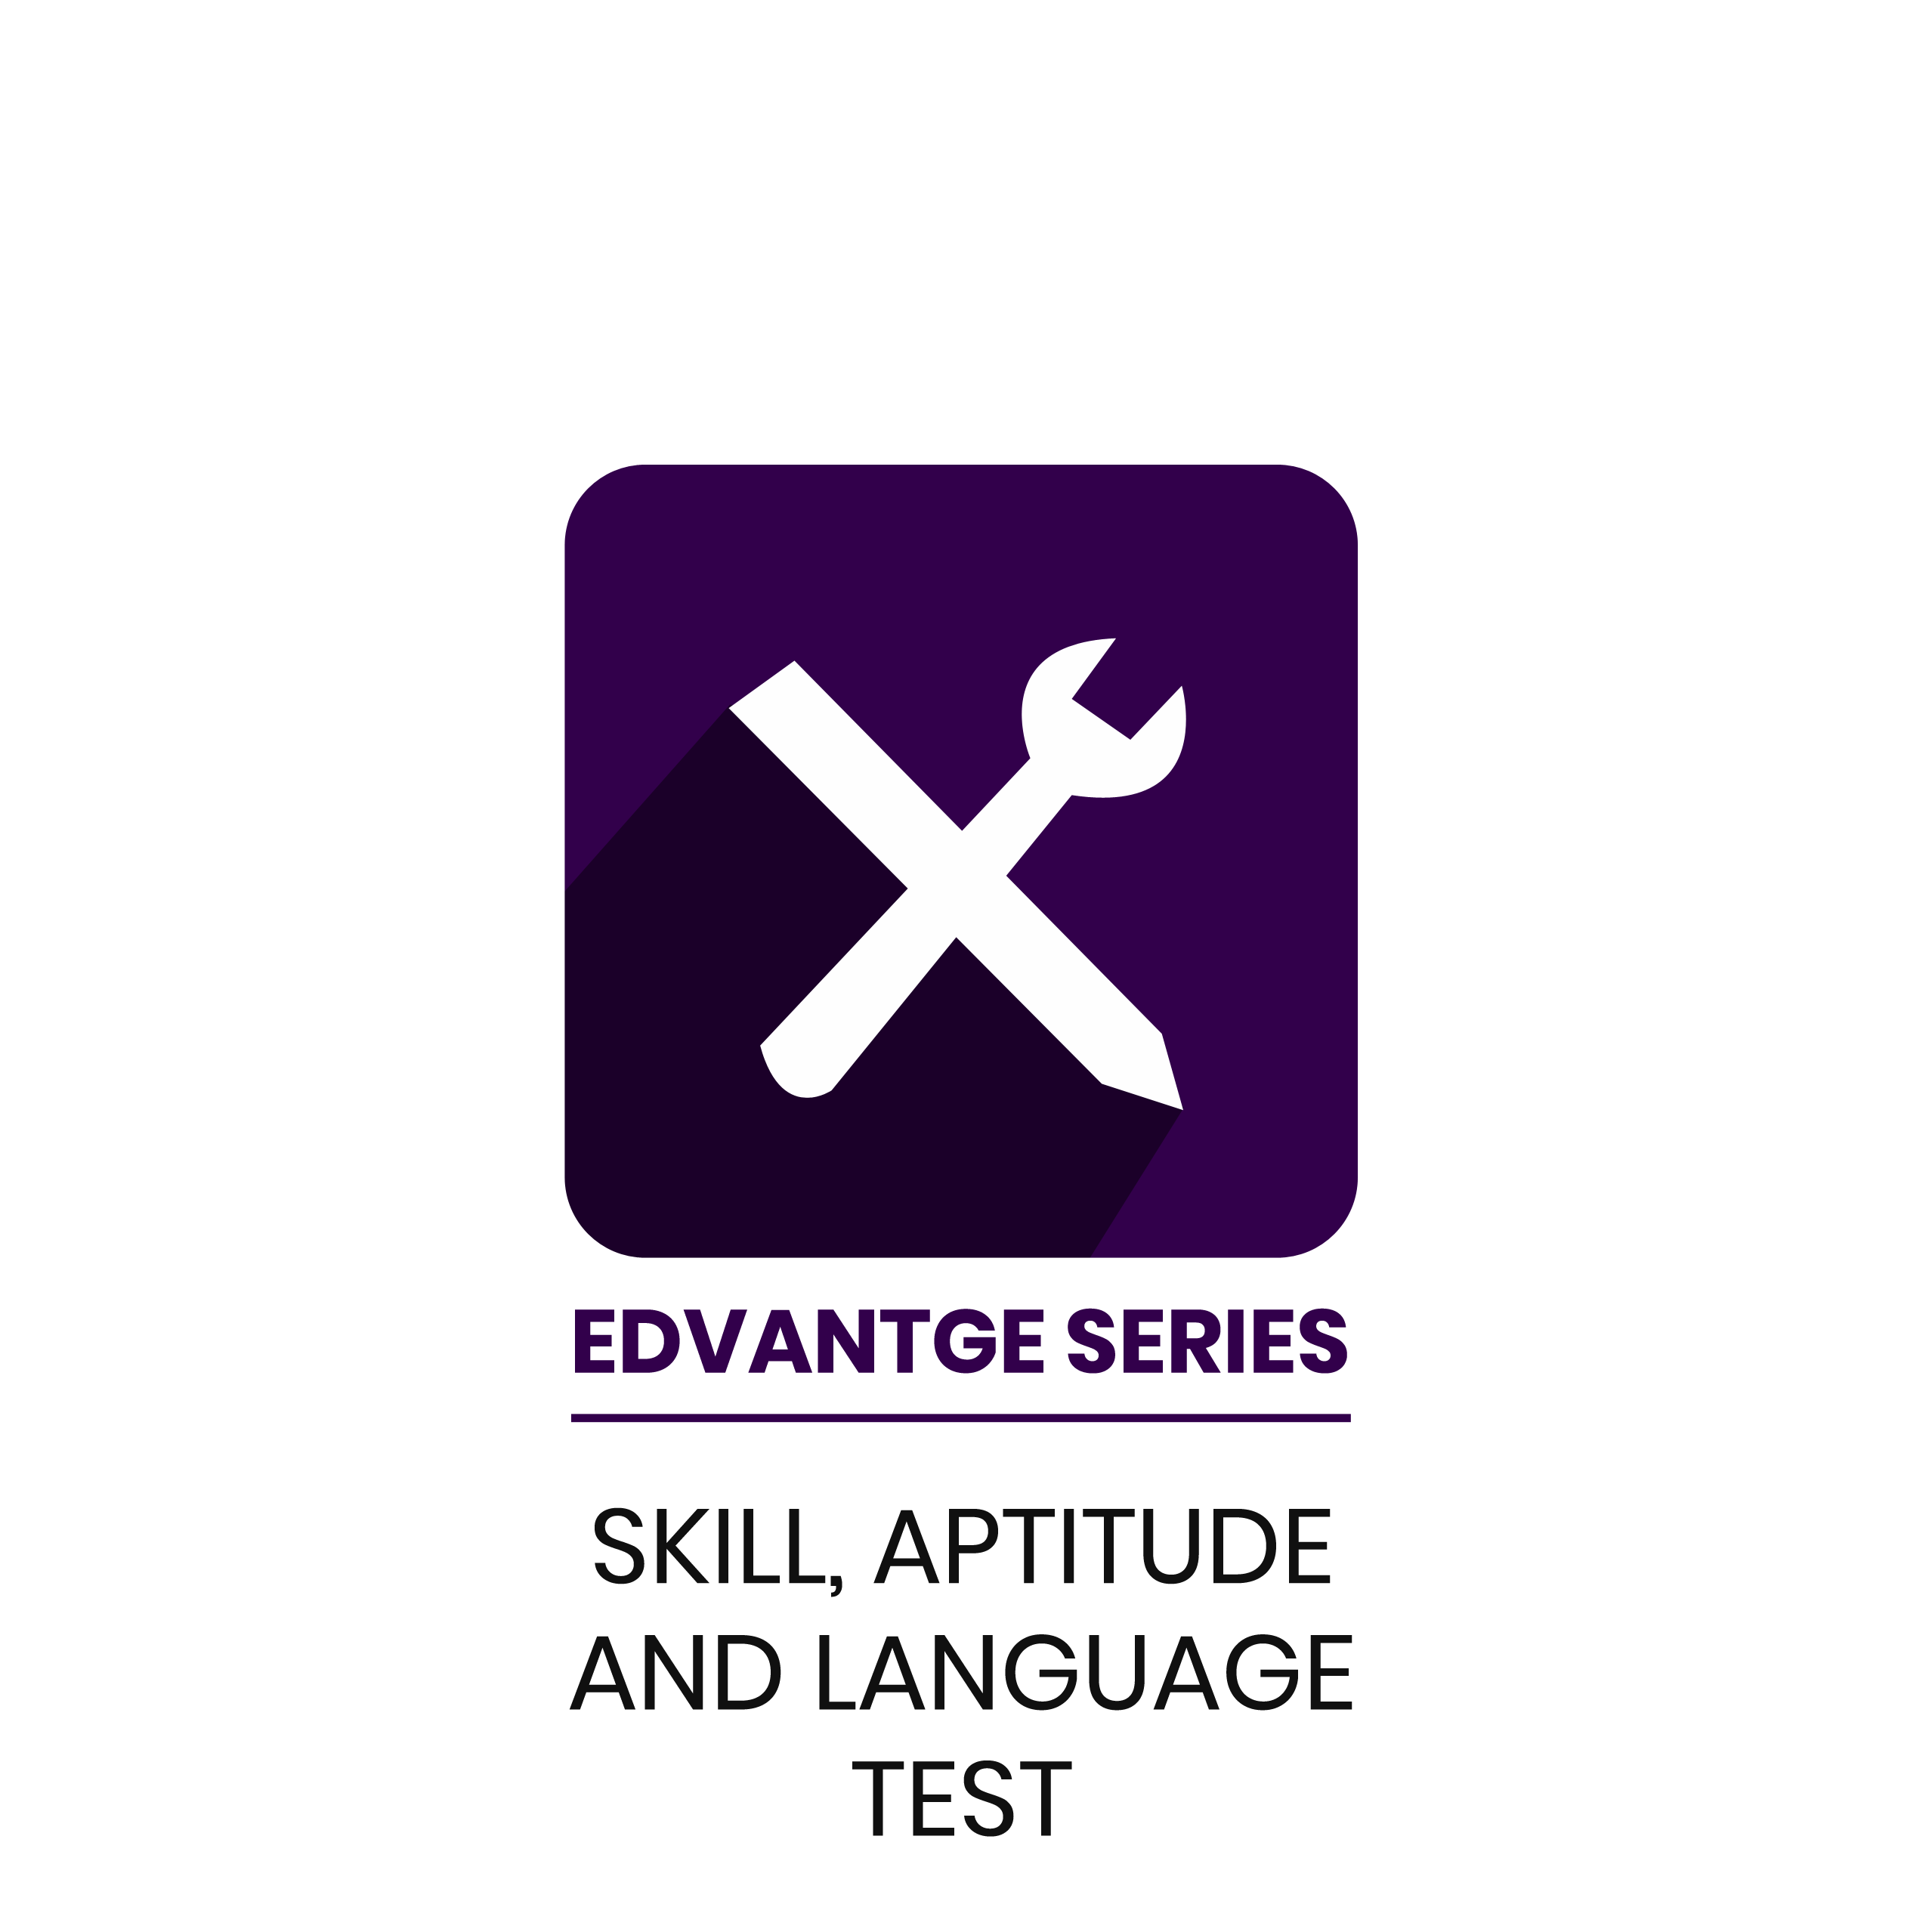 SKILL, APTITUDE AND LANGUAGE TEST Edvantage Series